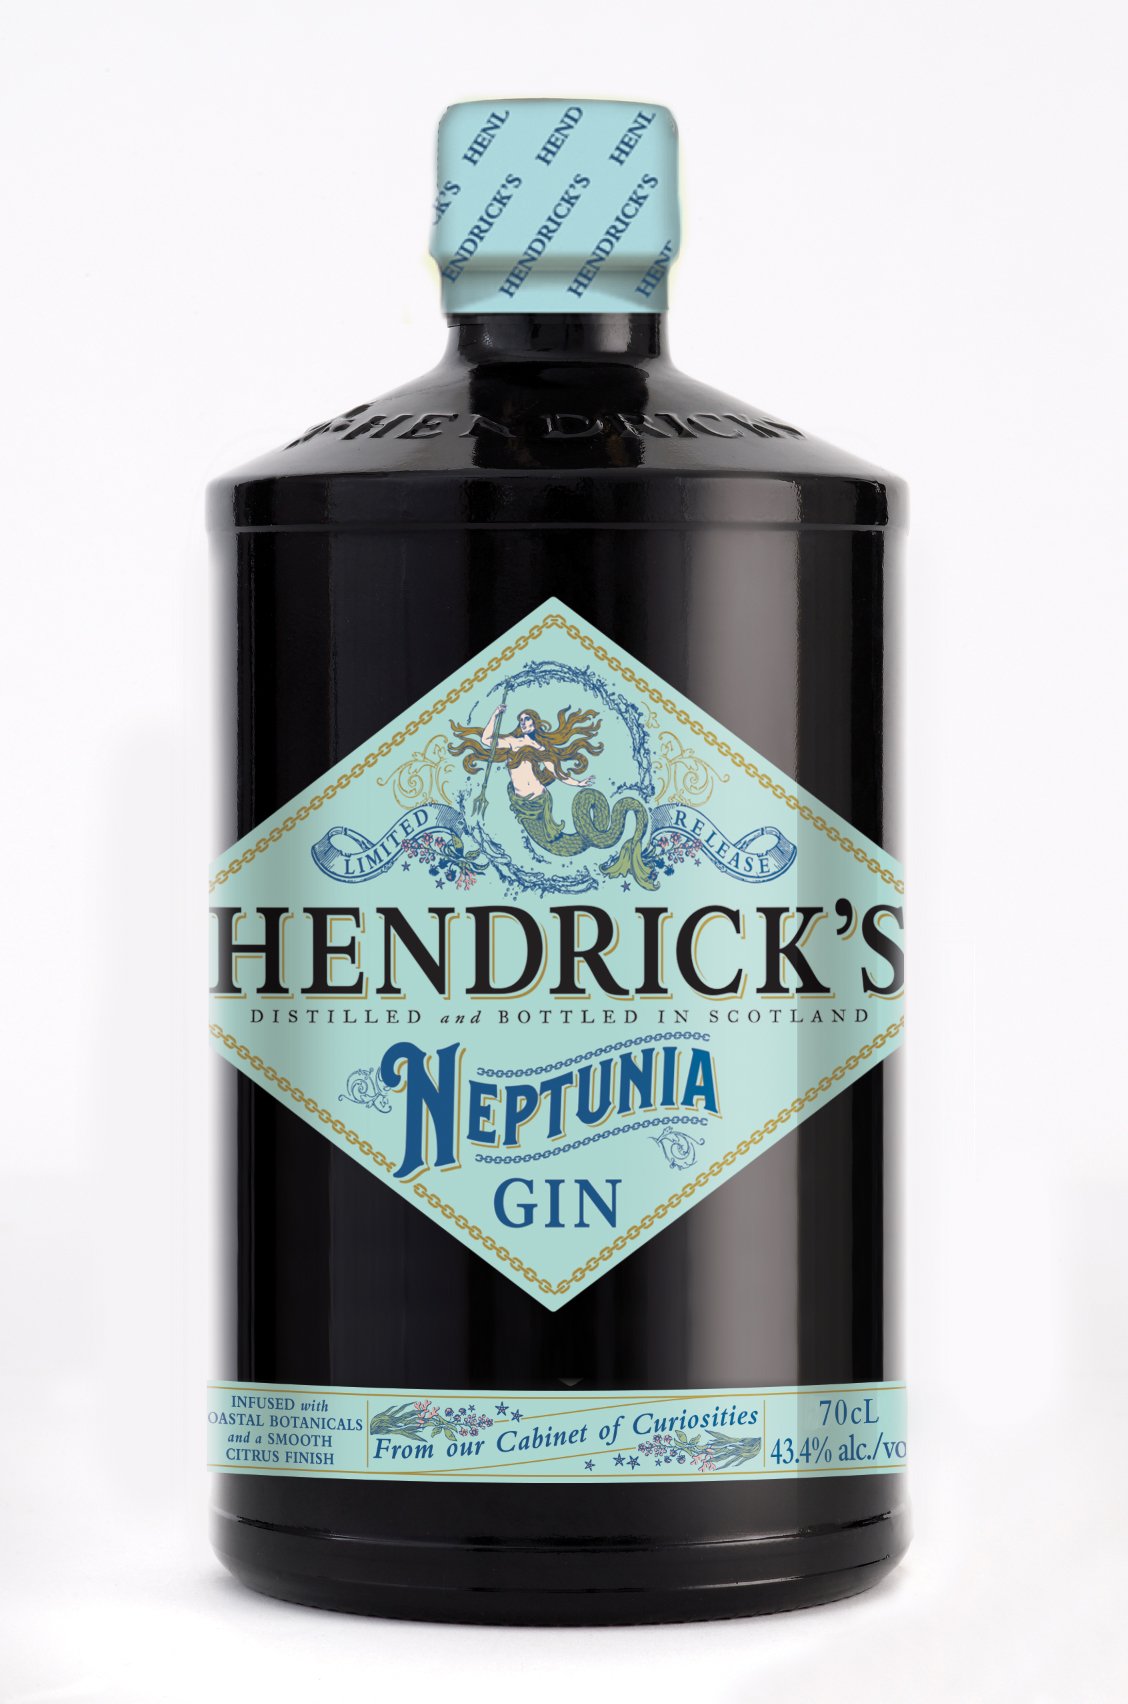 HENDRICKS Hendrick's "Neptunia" Gin 70cl.